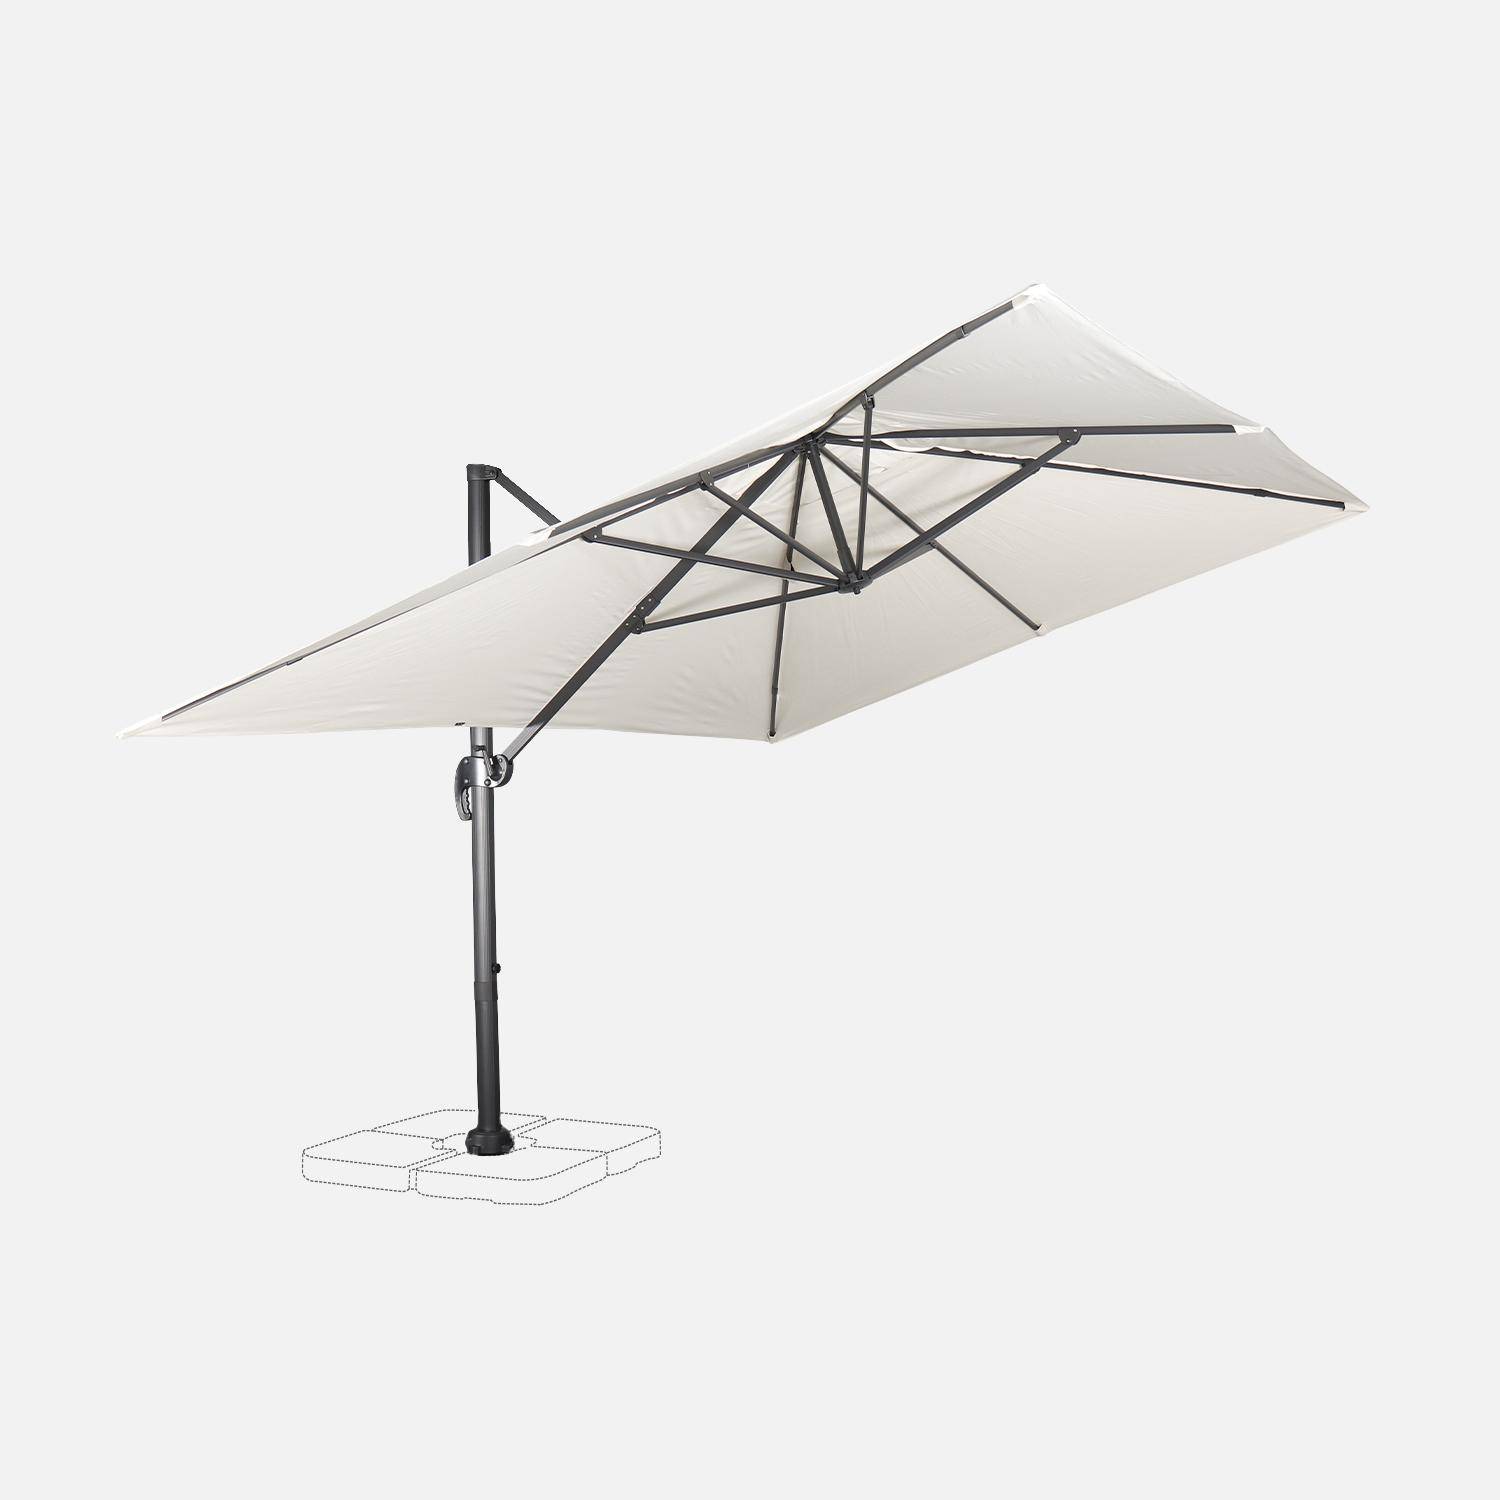 Wimereux grijze rechthoekige parasol, kantelbaar in 5 posities, 360° draaibaar, 3x4m.,sweeek,Photo5